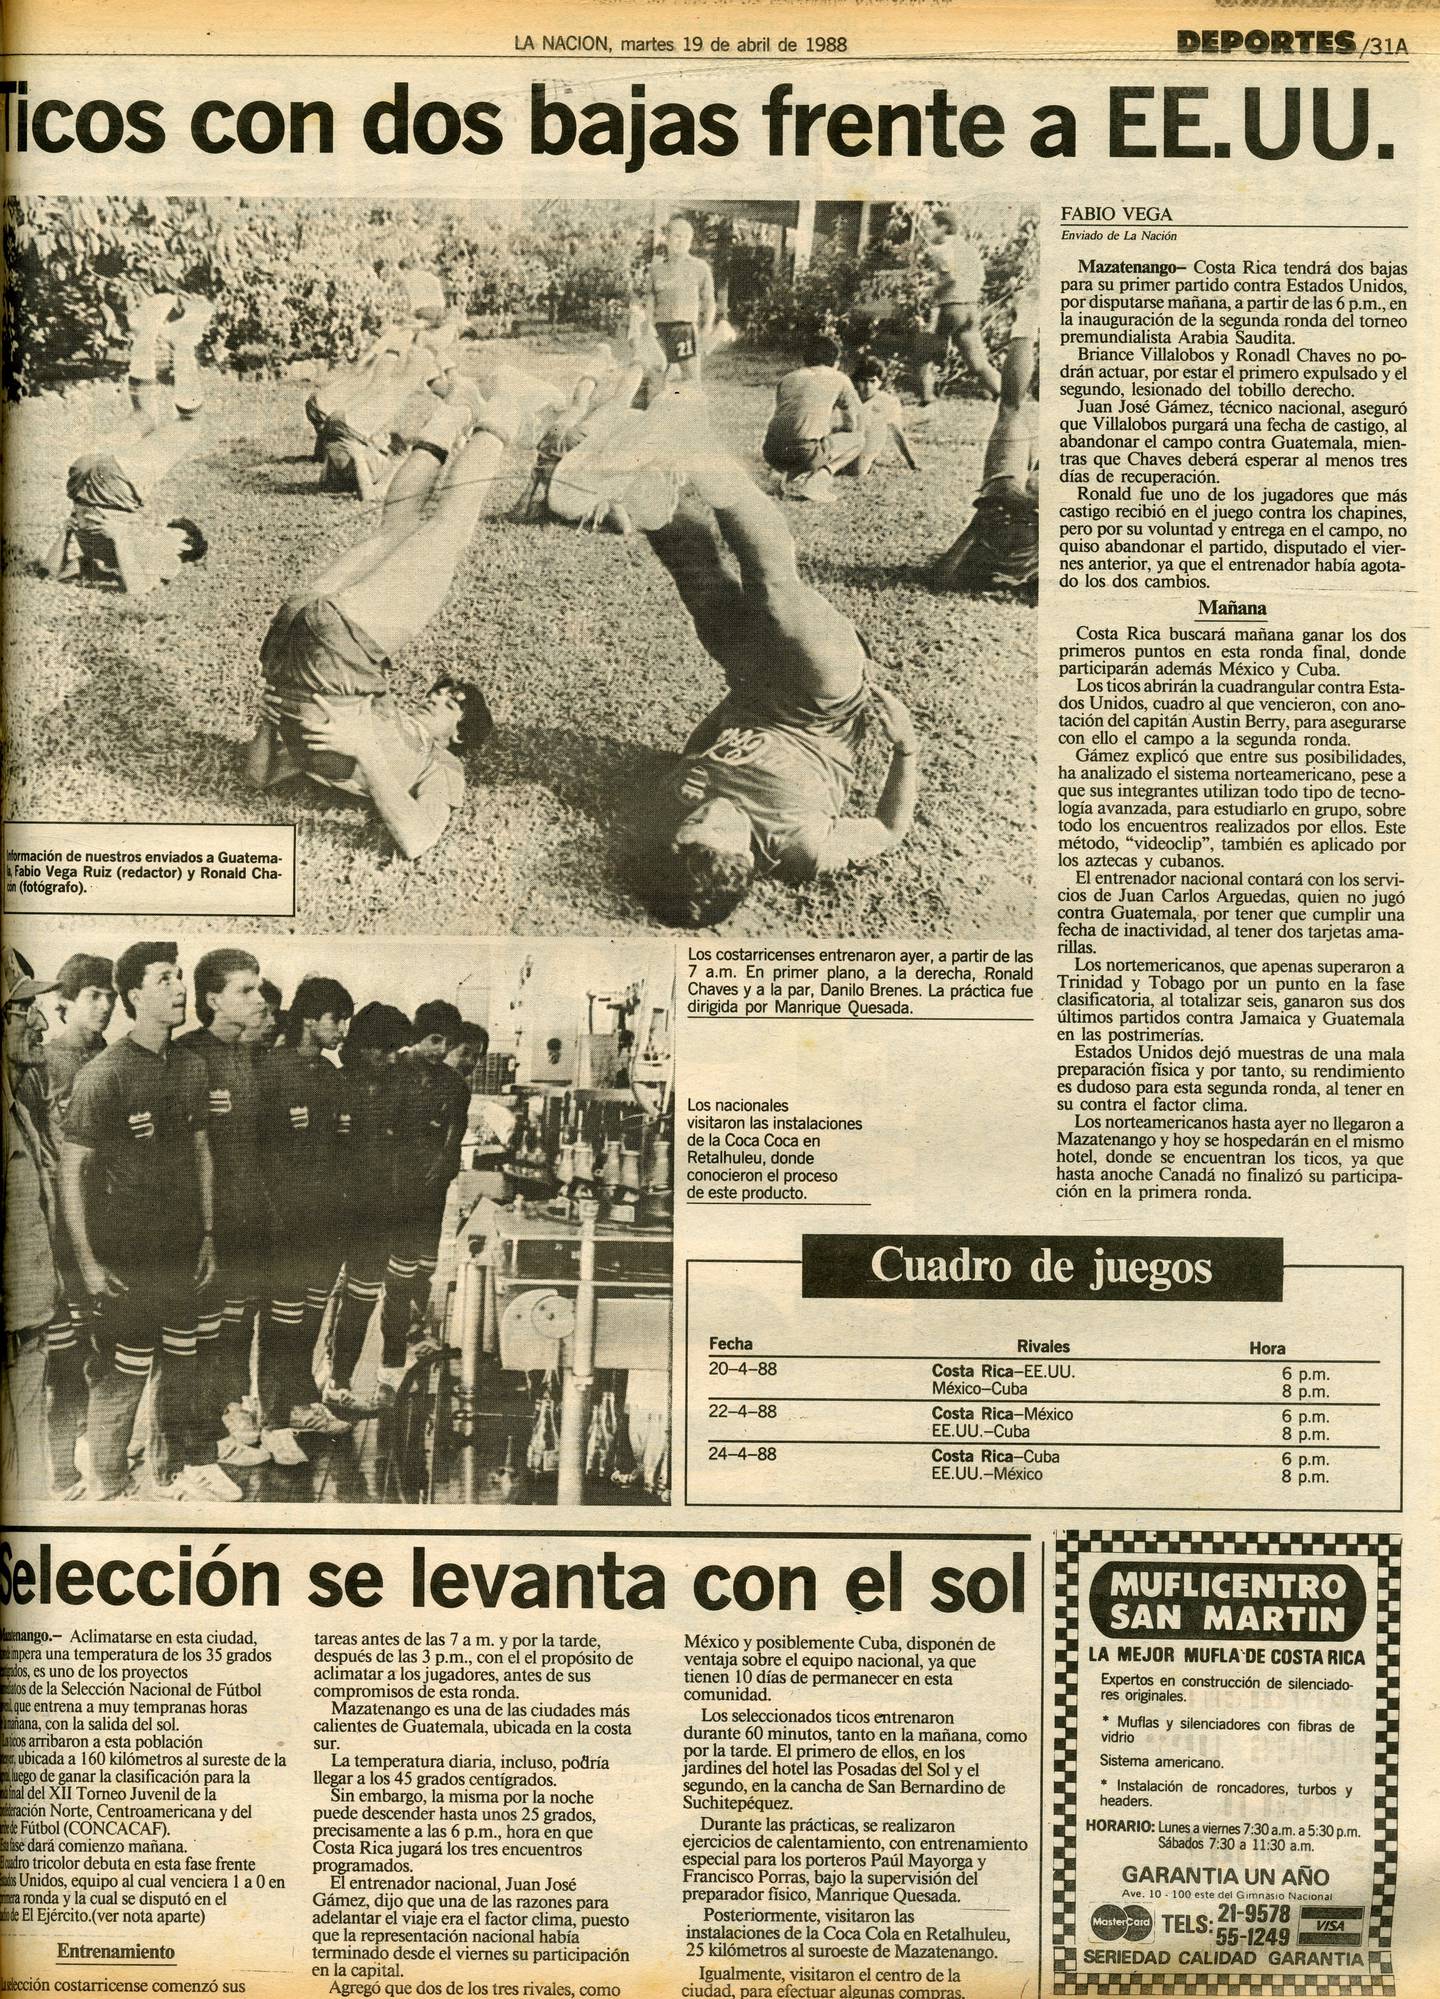 La Selección Sub-20 de Costa Rica tuvo que hacerle frente a dos bajas de peso para luchar por el boleto al Mundial de Arabia Saudita 1989.